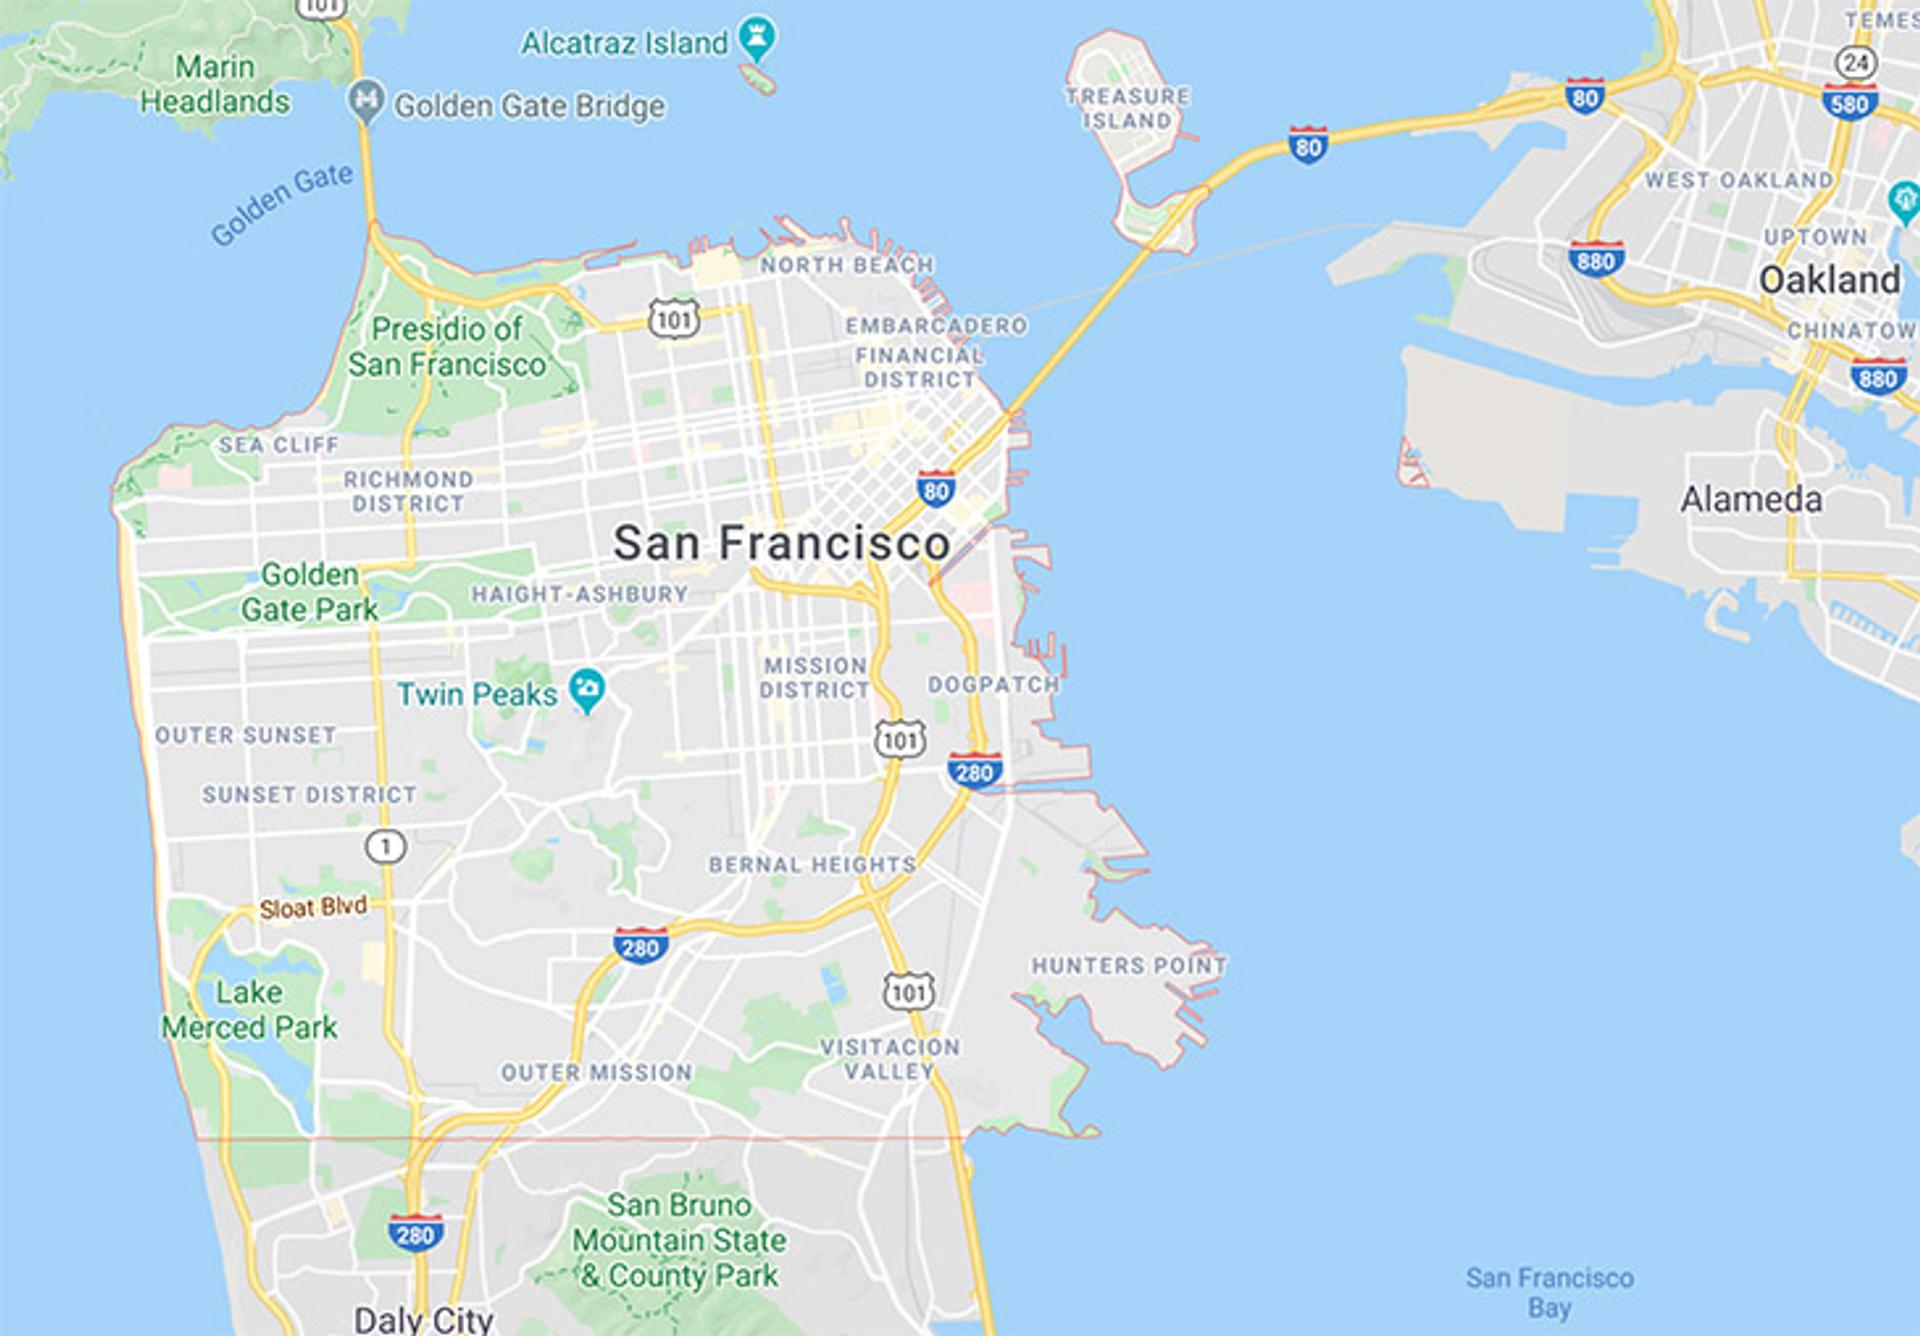 Fronteras del condado de San Francisco en un mapa de Google Maps